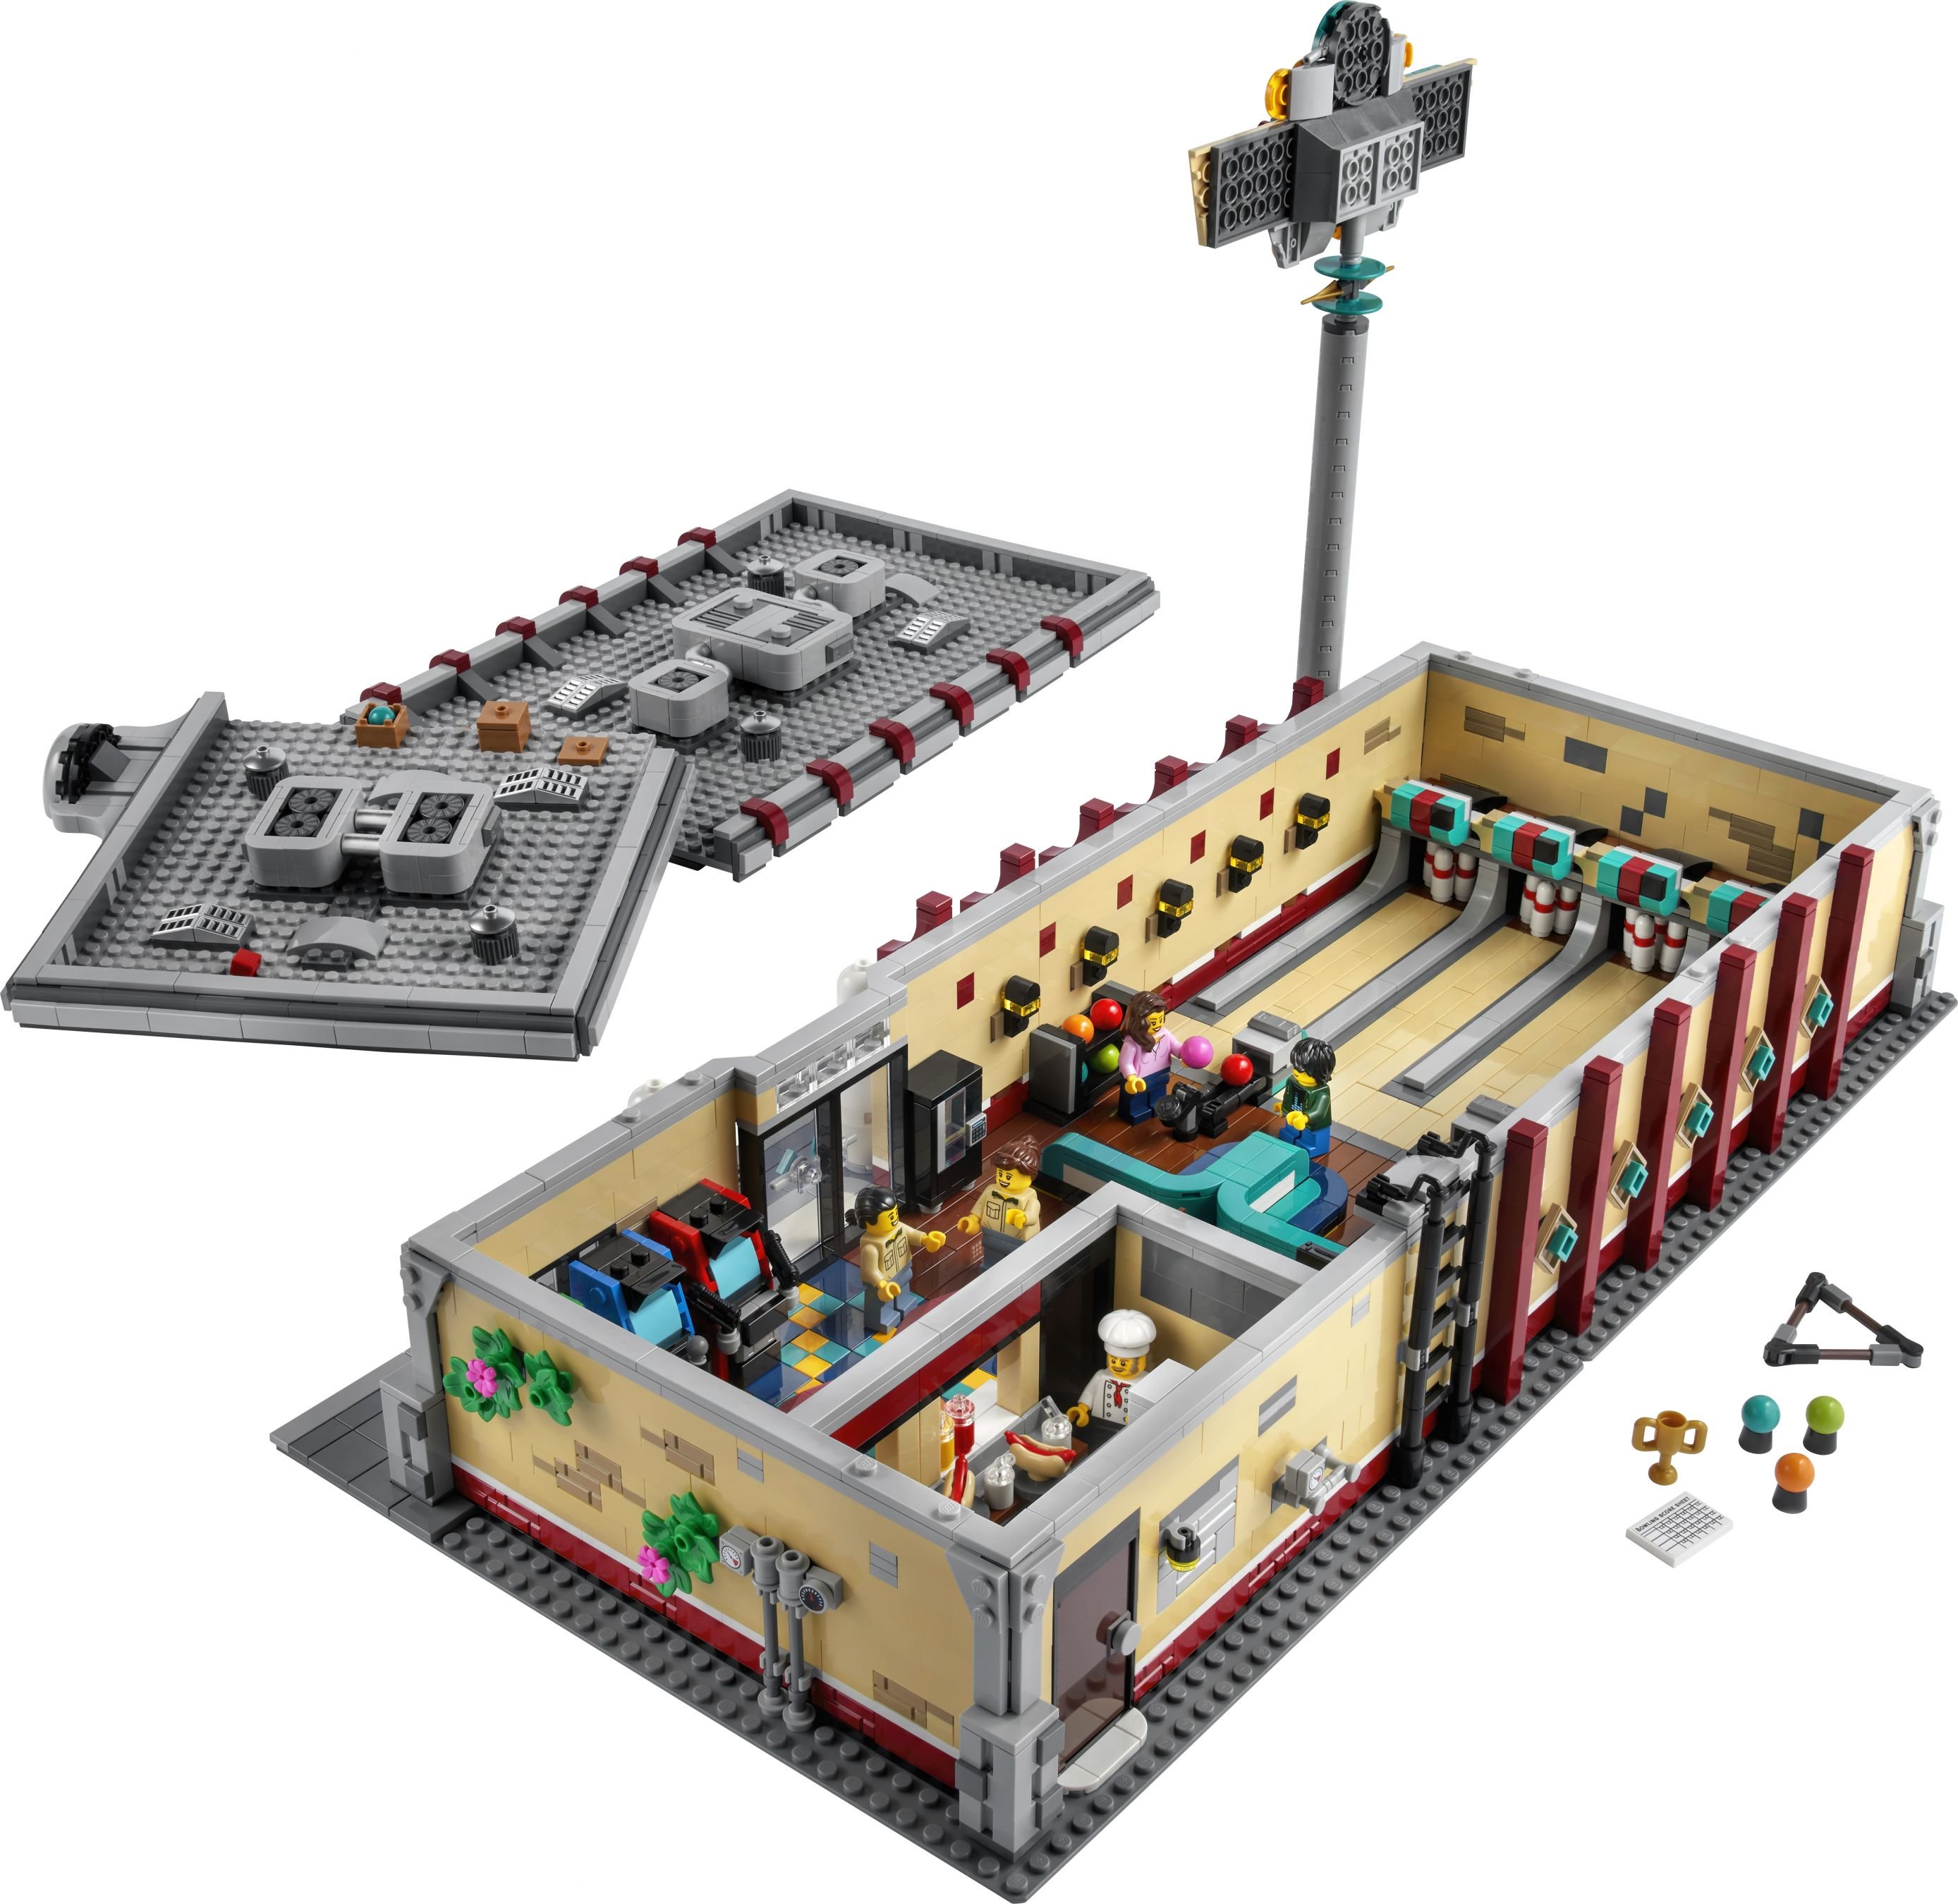 LEGO Bricklink 910013 Retro Bowling Alley LEGO_910013_back_01.jpg